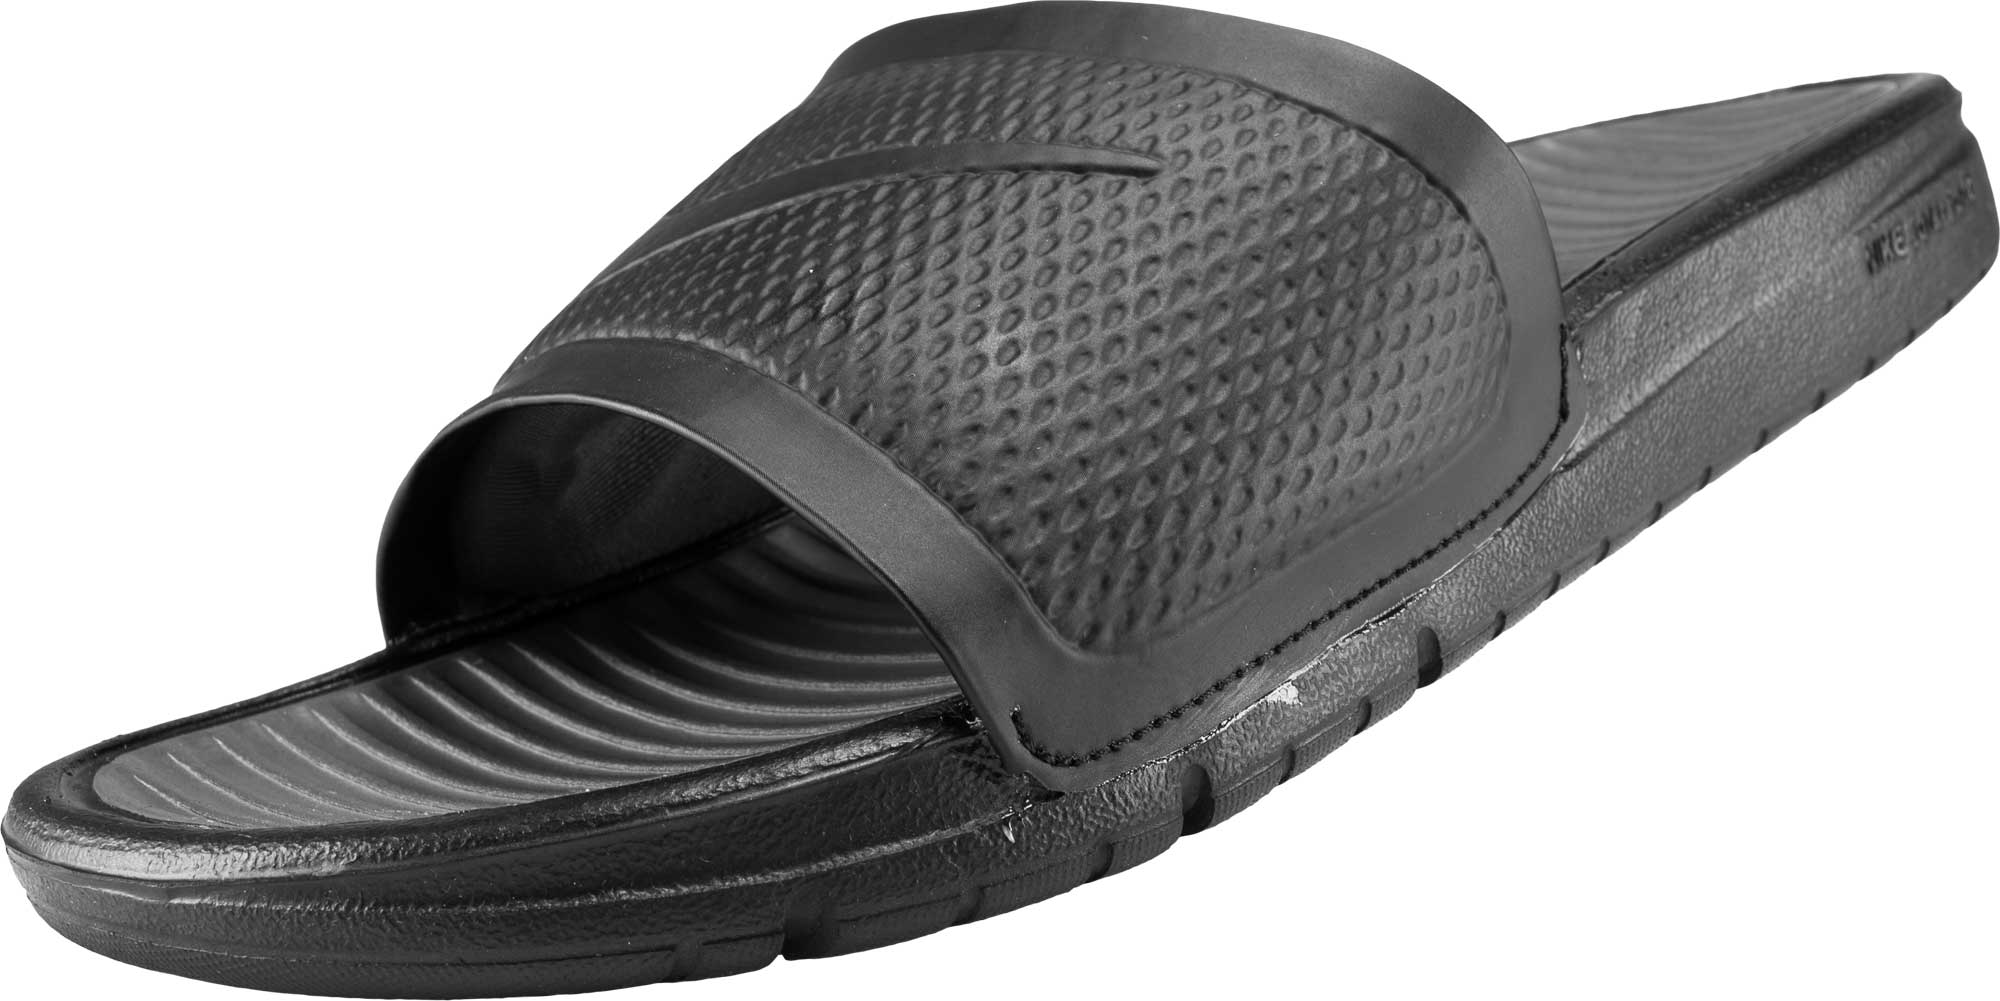 Nike Benassi Solarsoft Slide - Black 